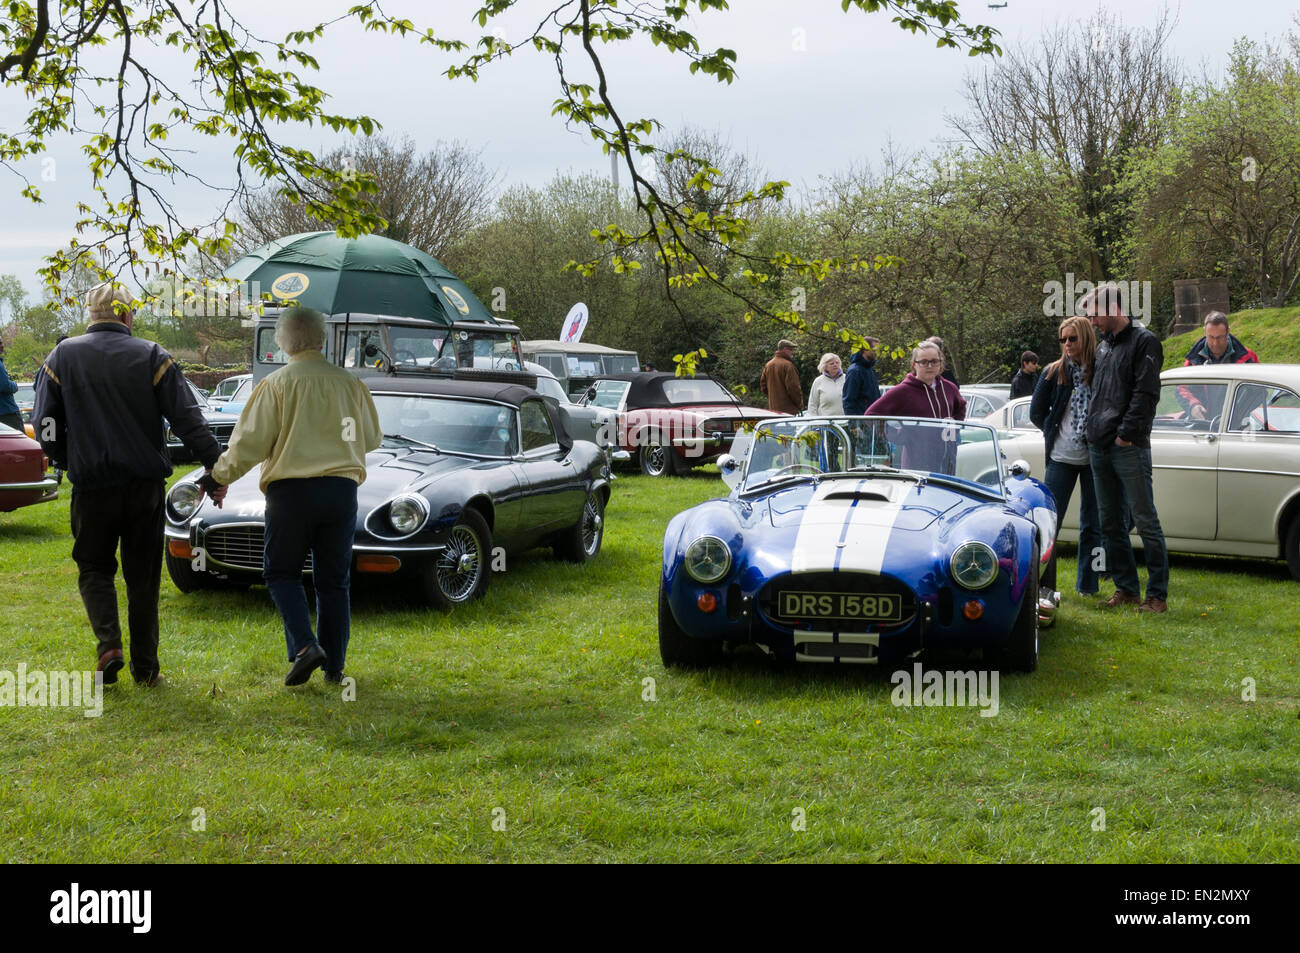 Shelby Cobra voiture de sport à la 5e brunch du dimanche Scramble à Bicester Oxfordshire, Angleterre, du patrimoine Banque D'Images